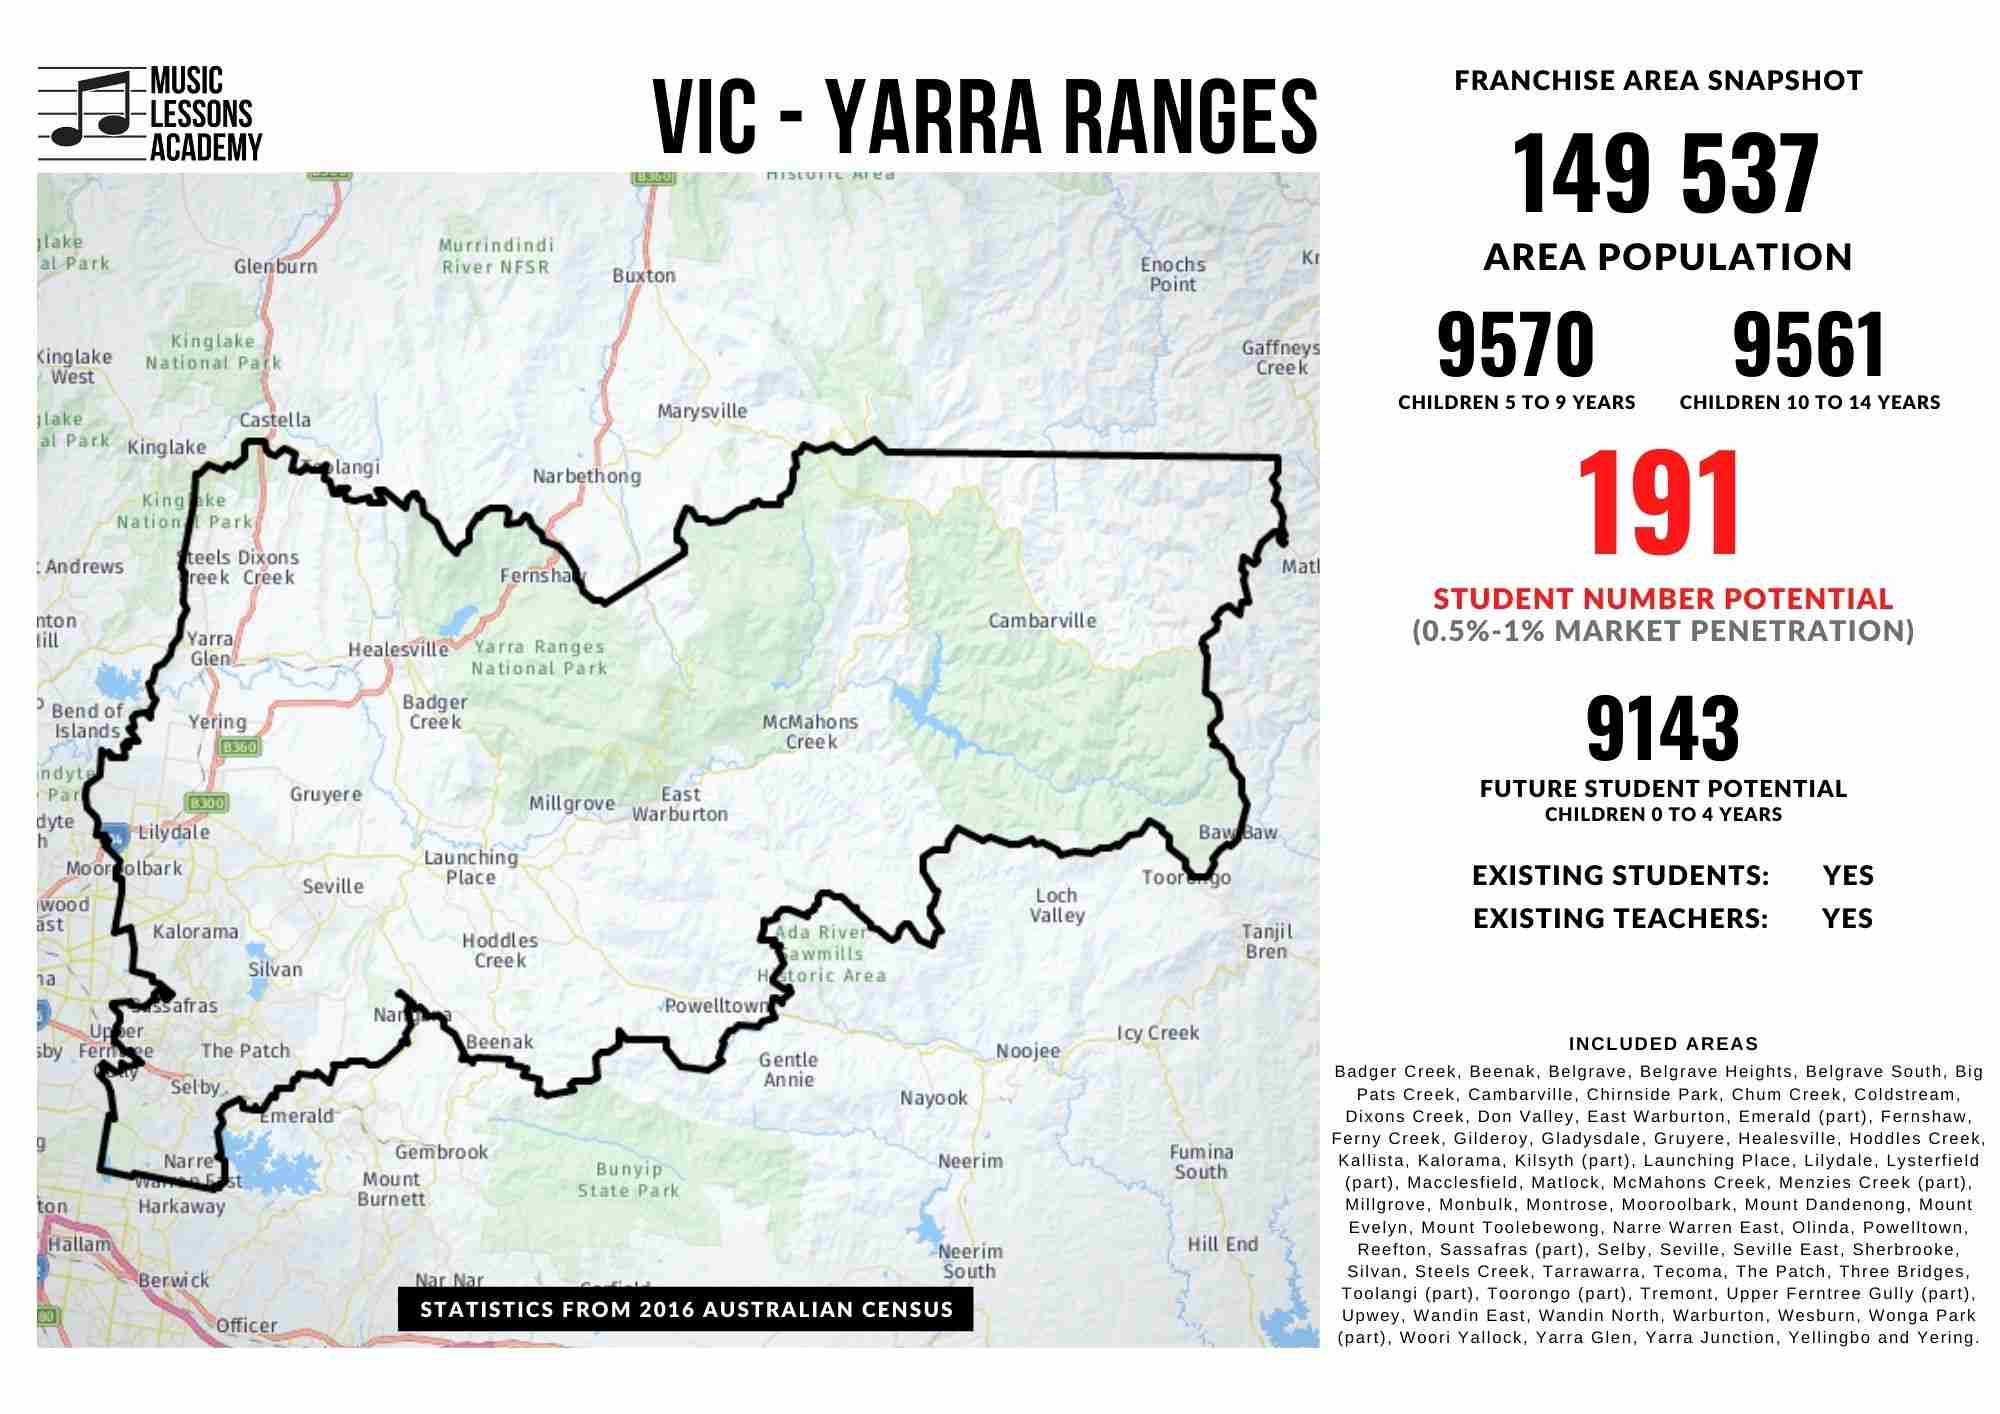 VIC Yarra Ranges Rural Victoria Franchise for sale